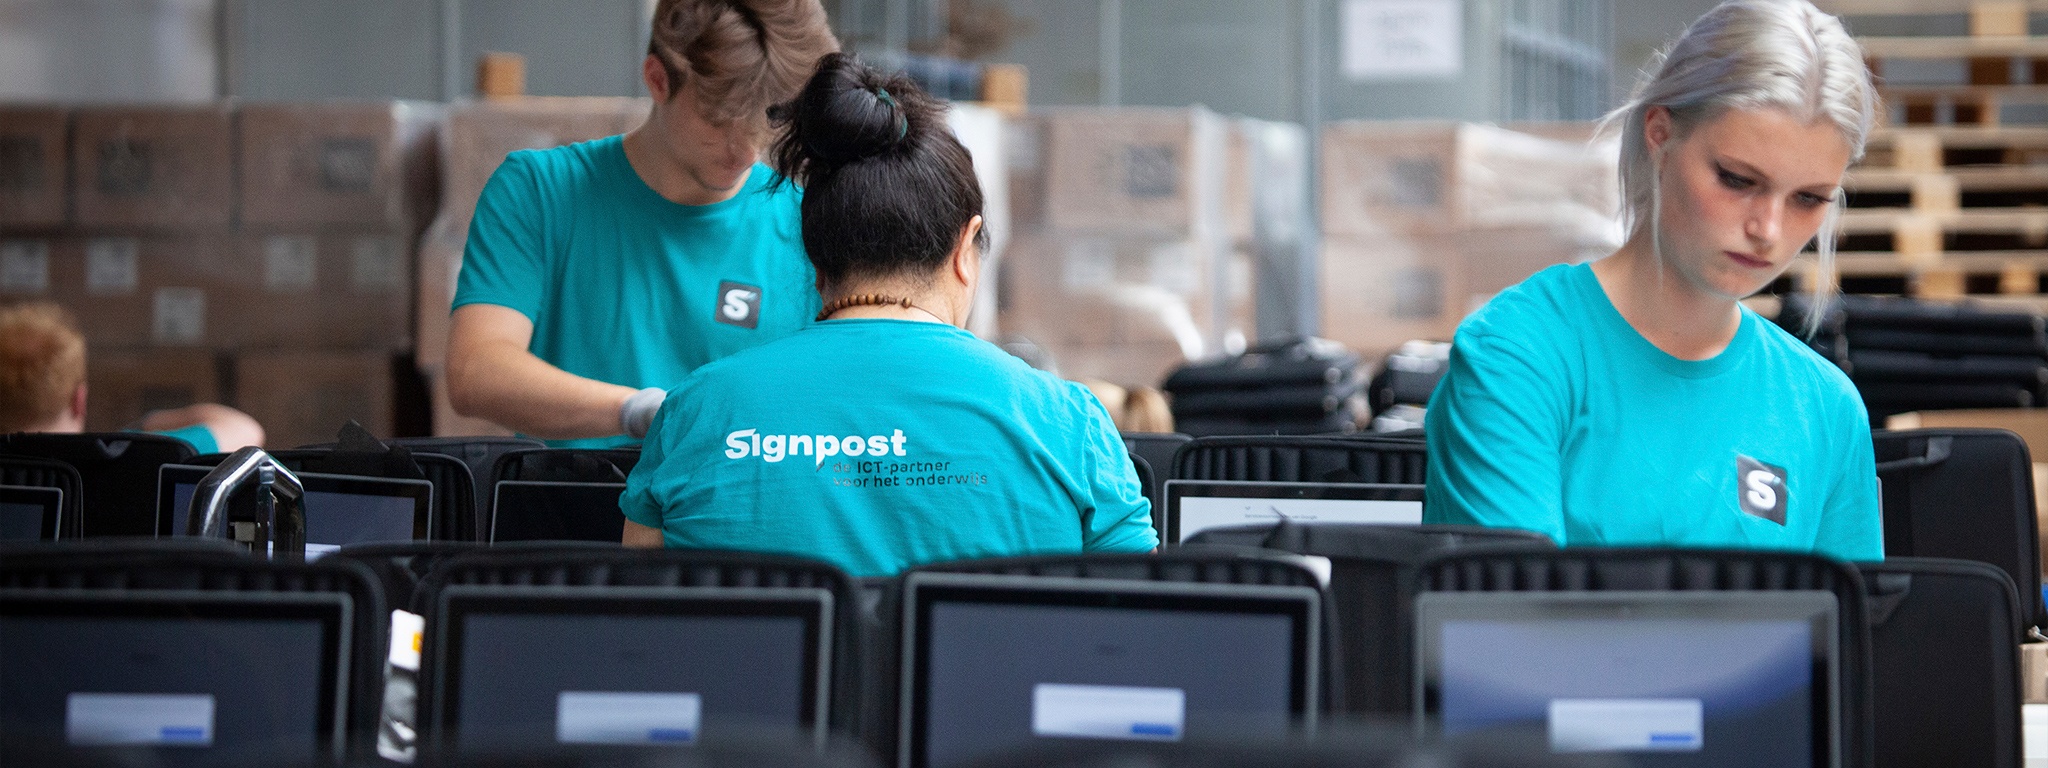 Đội ngũ kho hàng của Signpost đang thiết lập máy tính xách tay để giao đến khách hàng